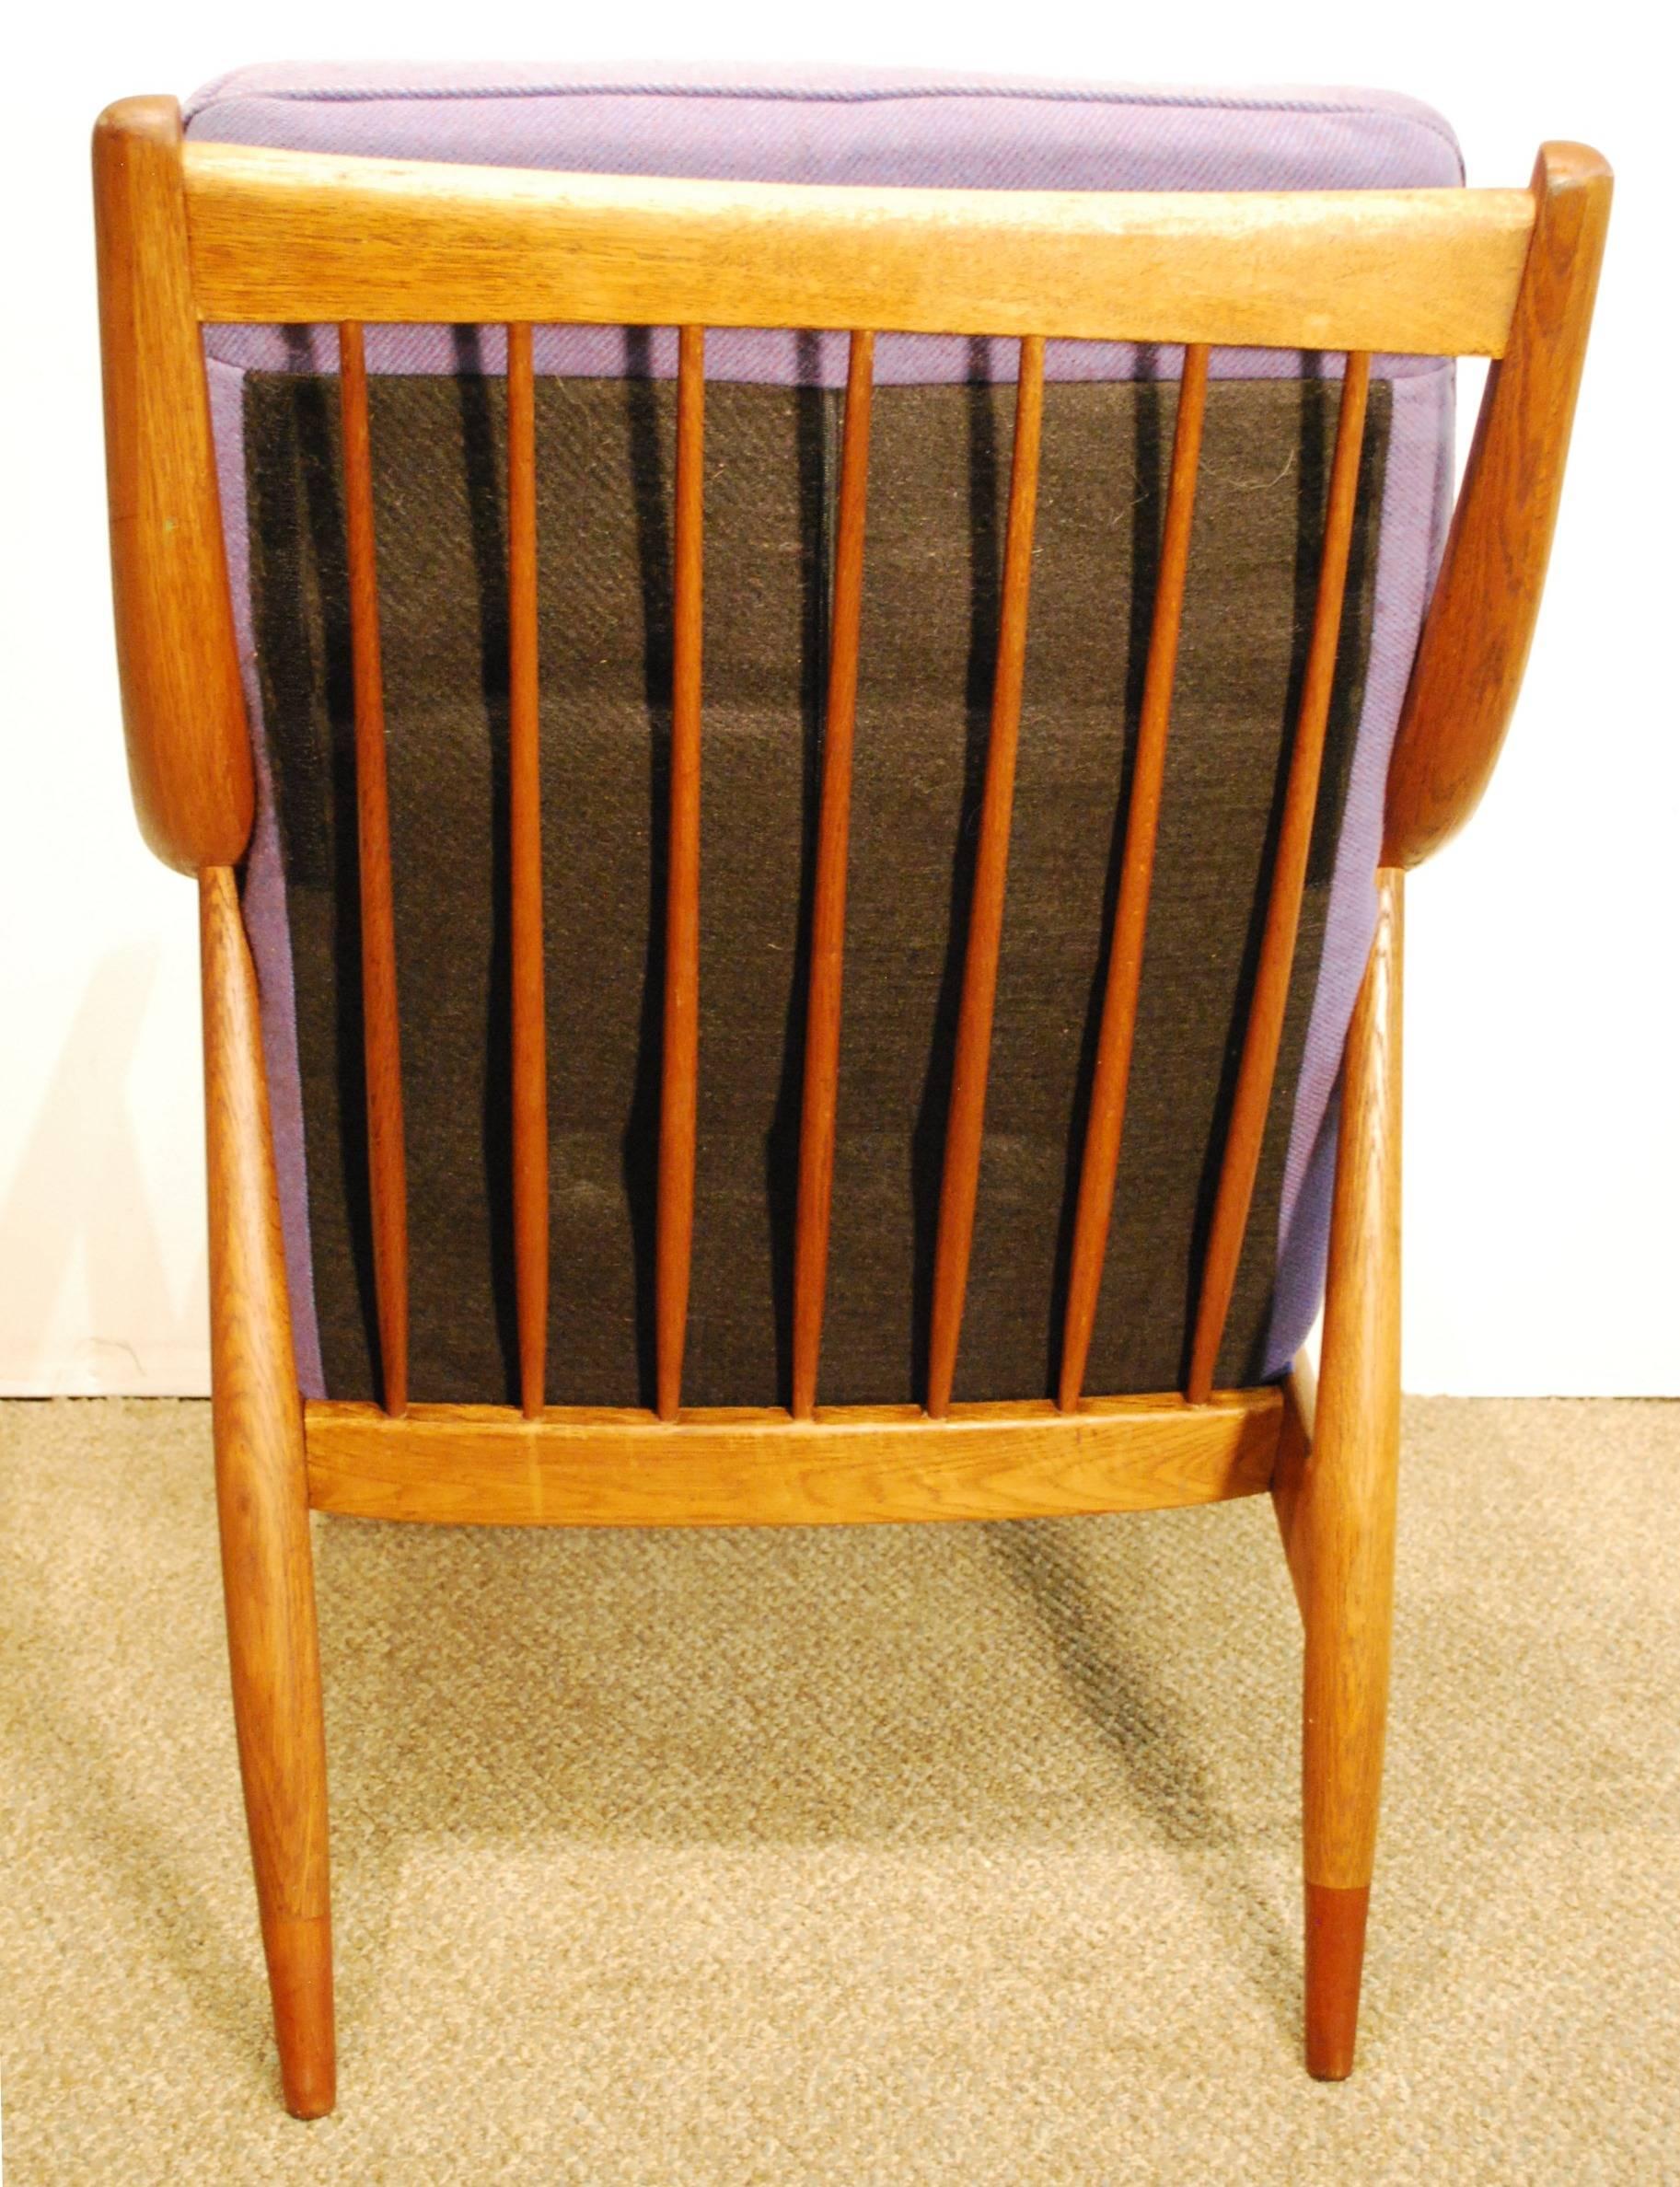 Mid-20th Century Peter Hvidt/Orla Molgaard-Nielsen Designed Danish Modern Teak Easy Chair #148  For Sale